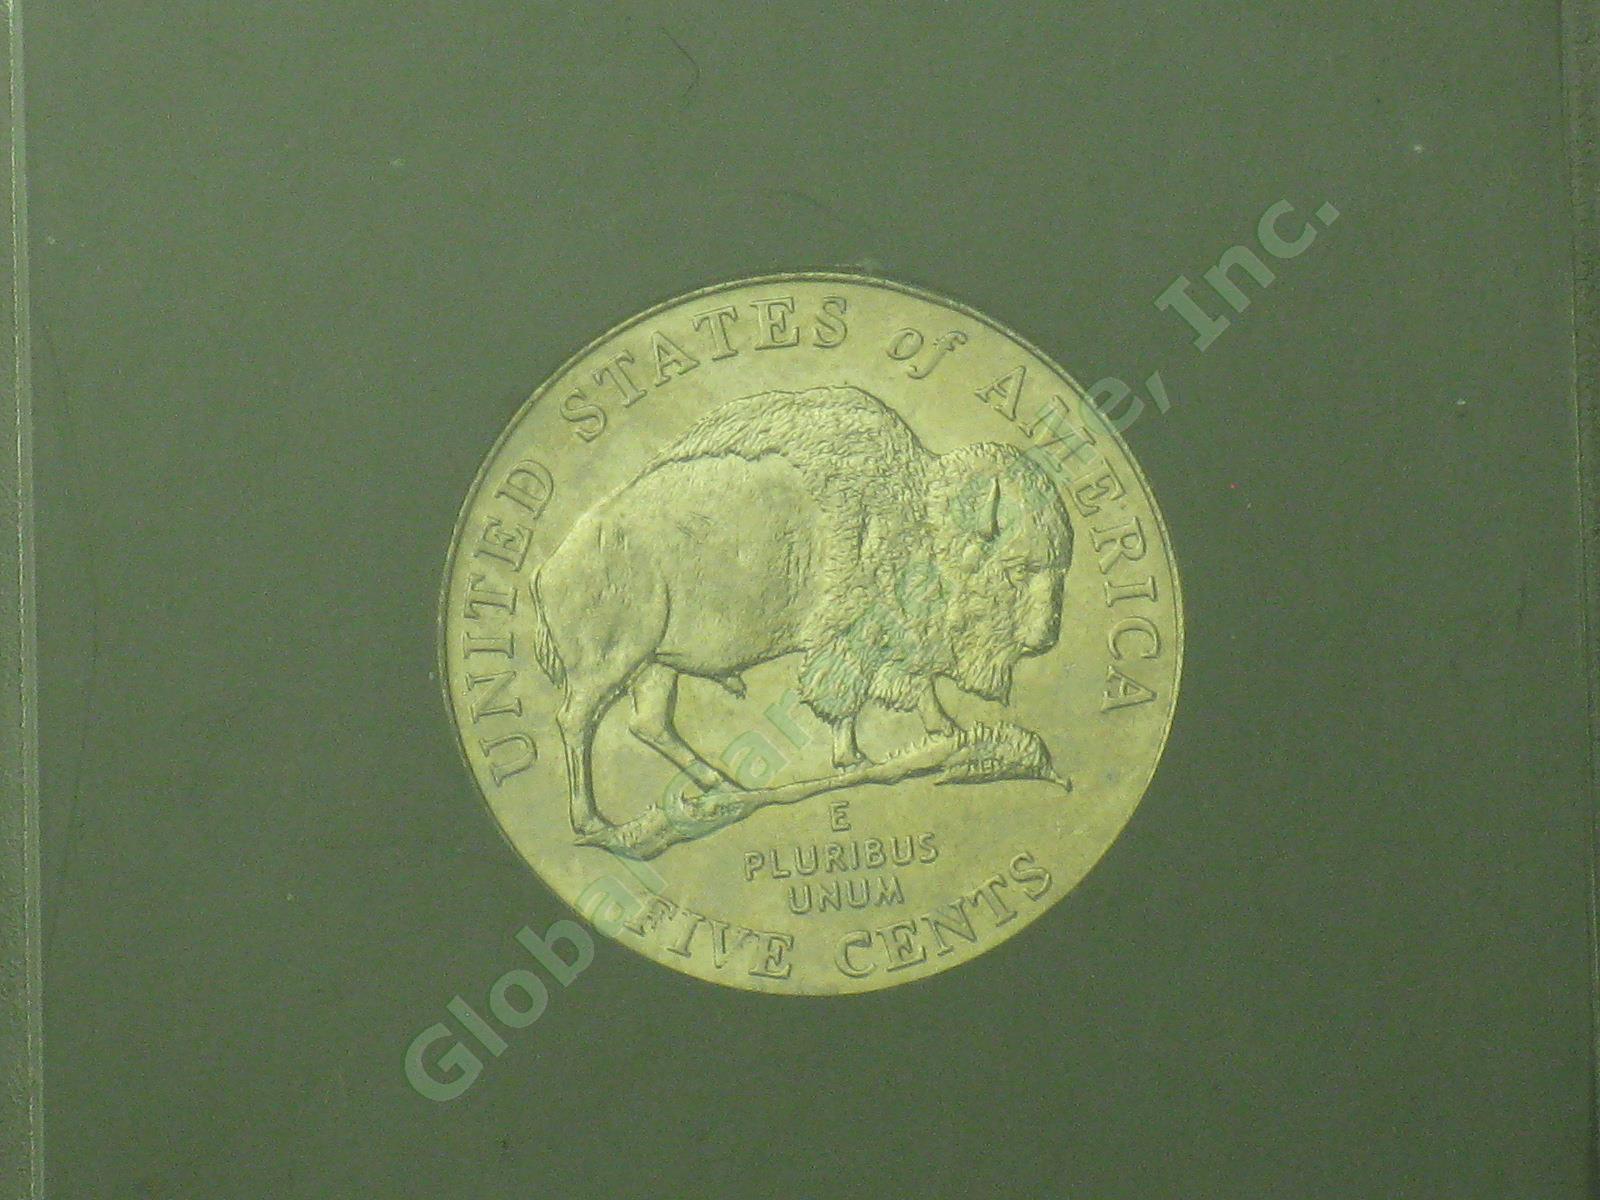 19 Jefferson Nickel Mint Errors Lot 1990s 2000s UNC Doubling Die Chips Blank ++ 24